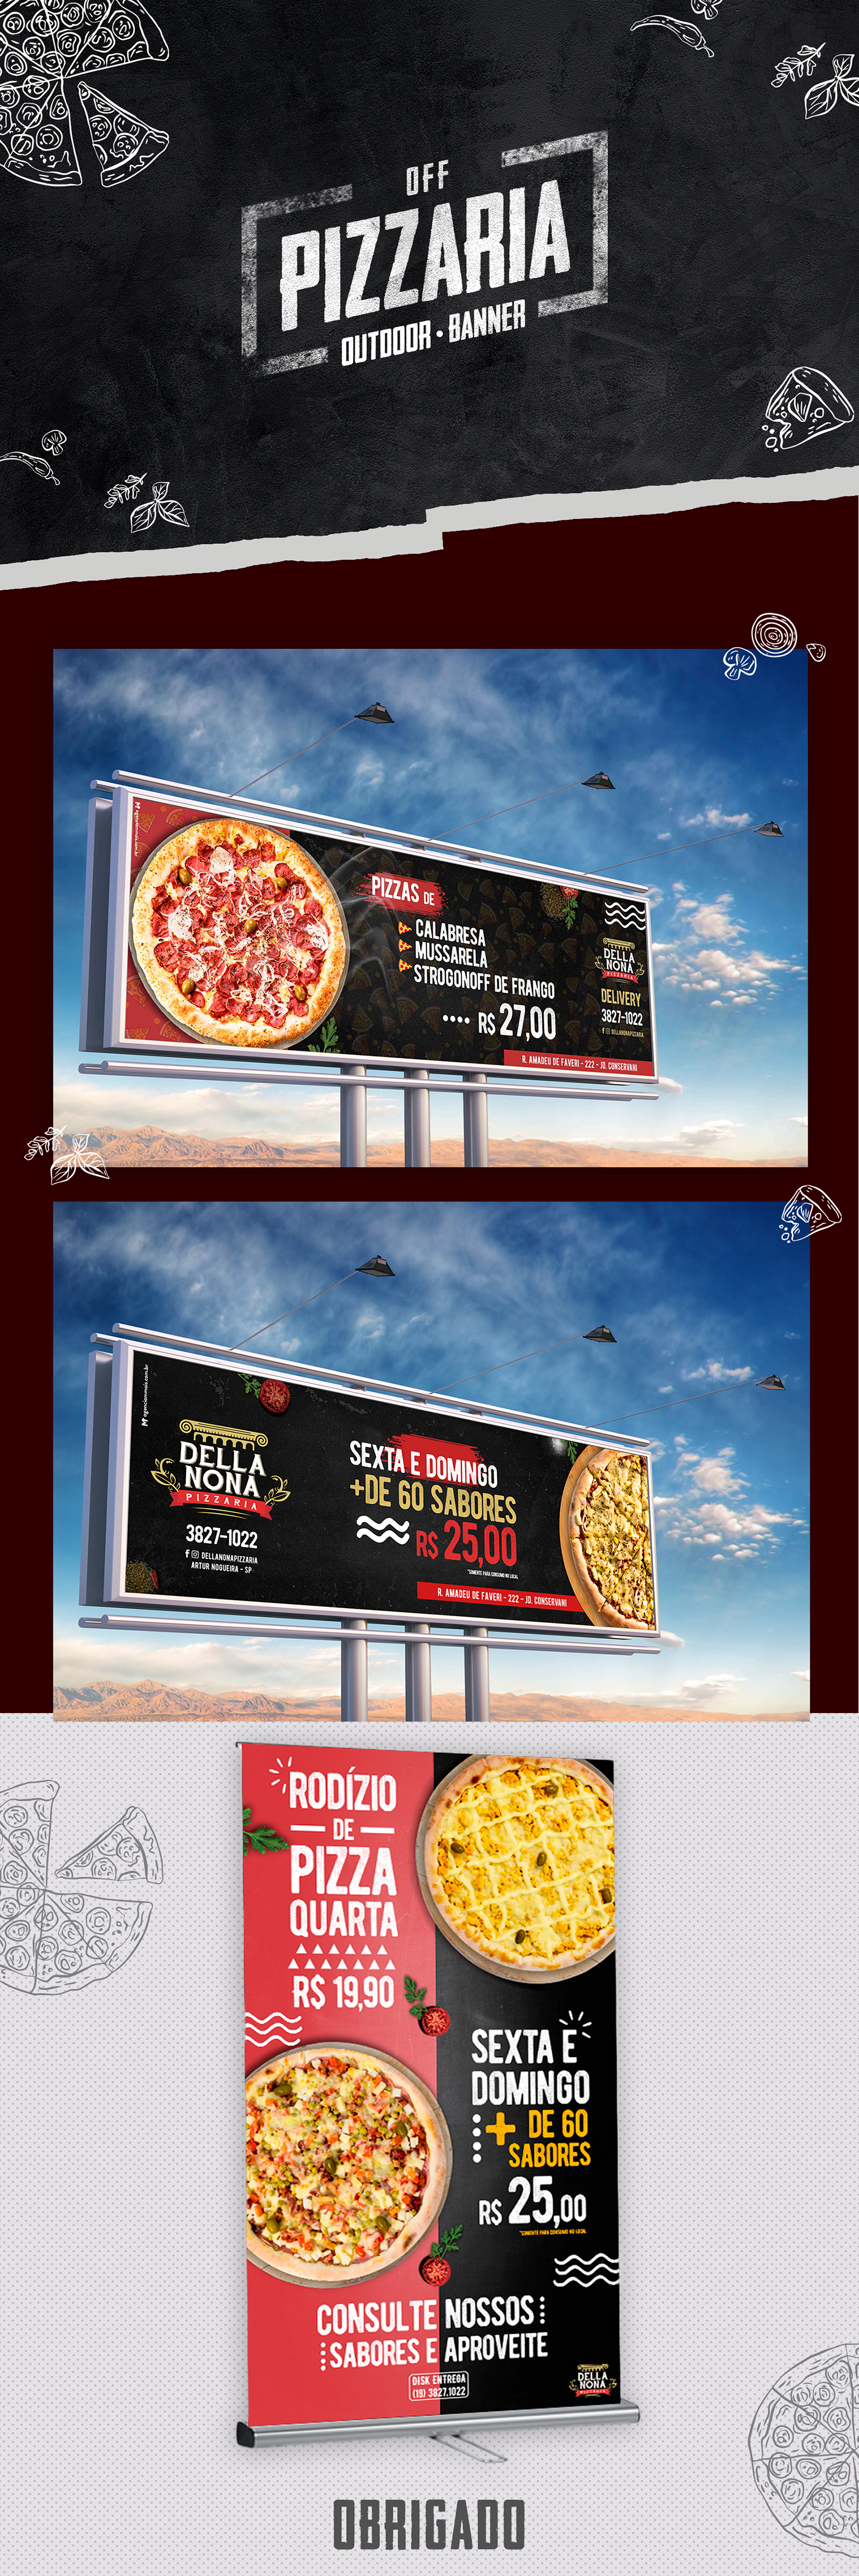 off. outdoor. Banner. pizzaria. Design. Food. mockup. PUBLICIDADE.